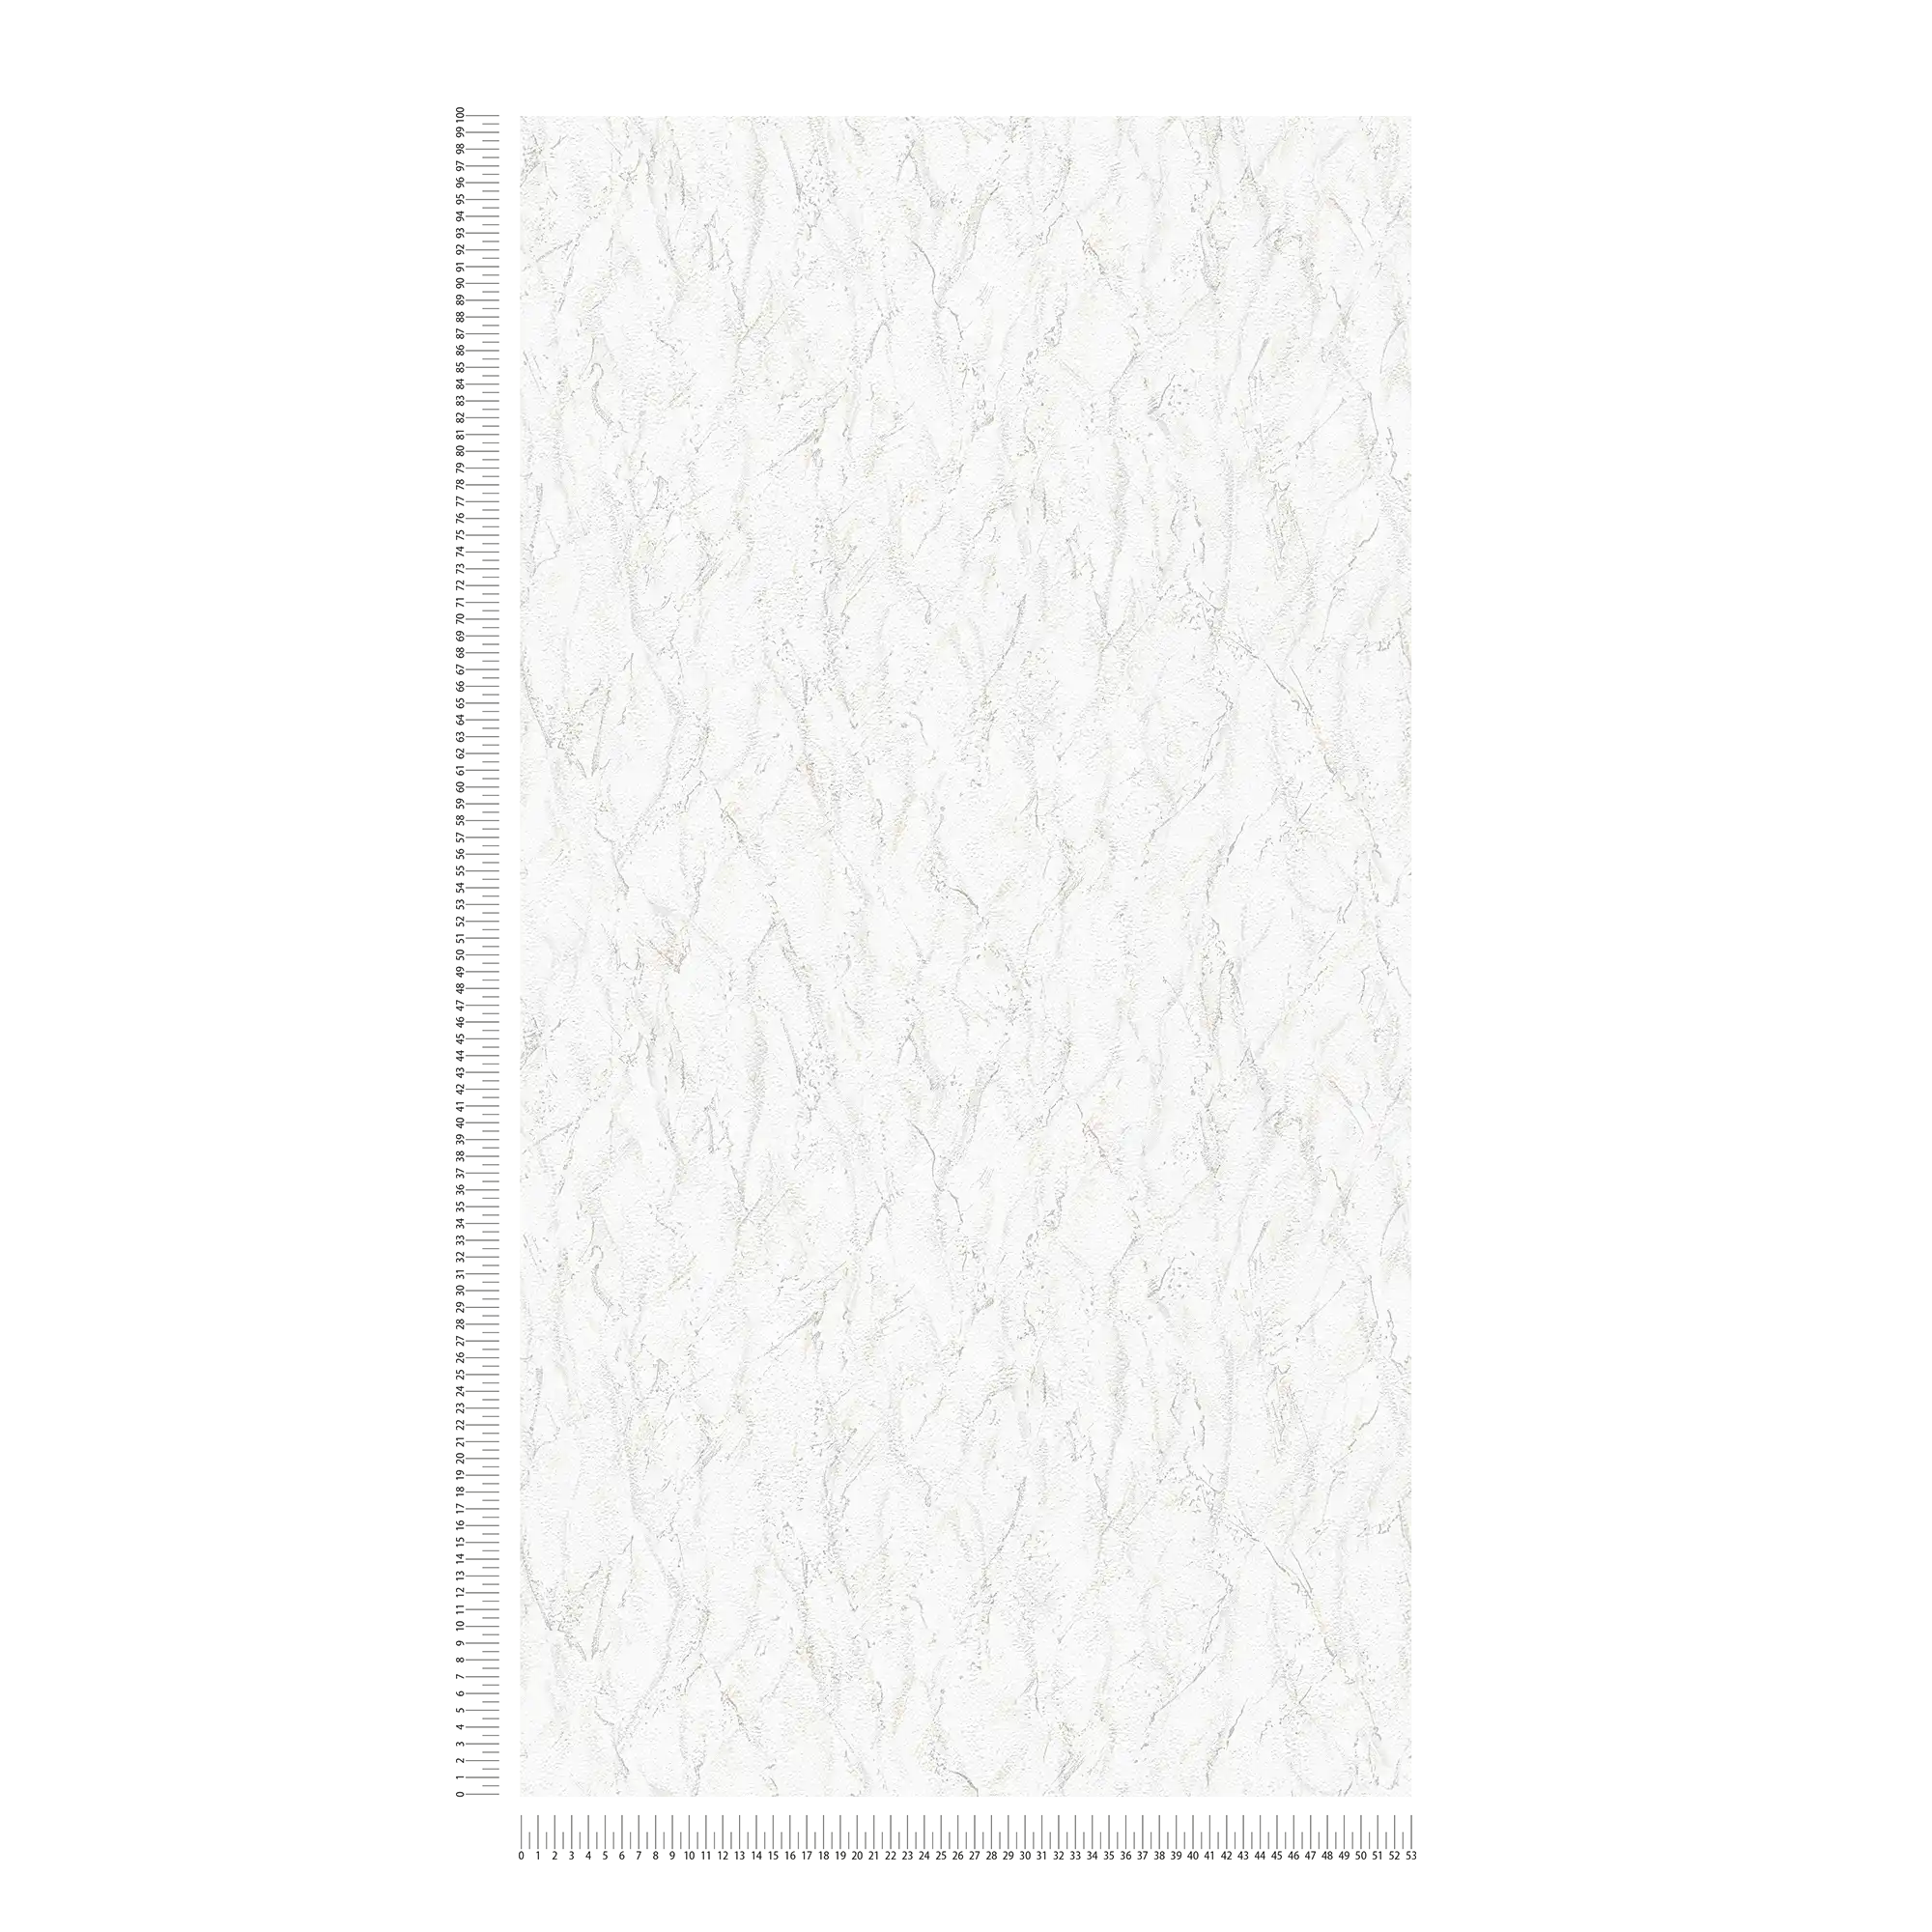             Carta da parati strutturata con motivo a rilievo ed effetto marmo - grigio, bianco
        